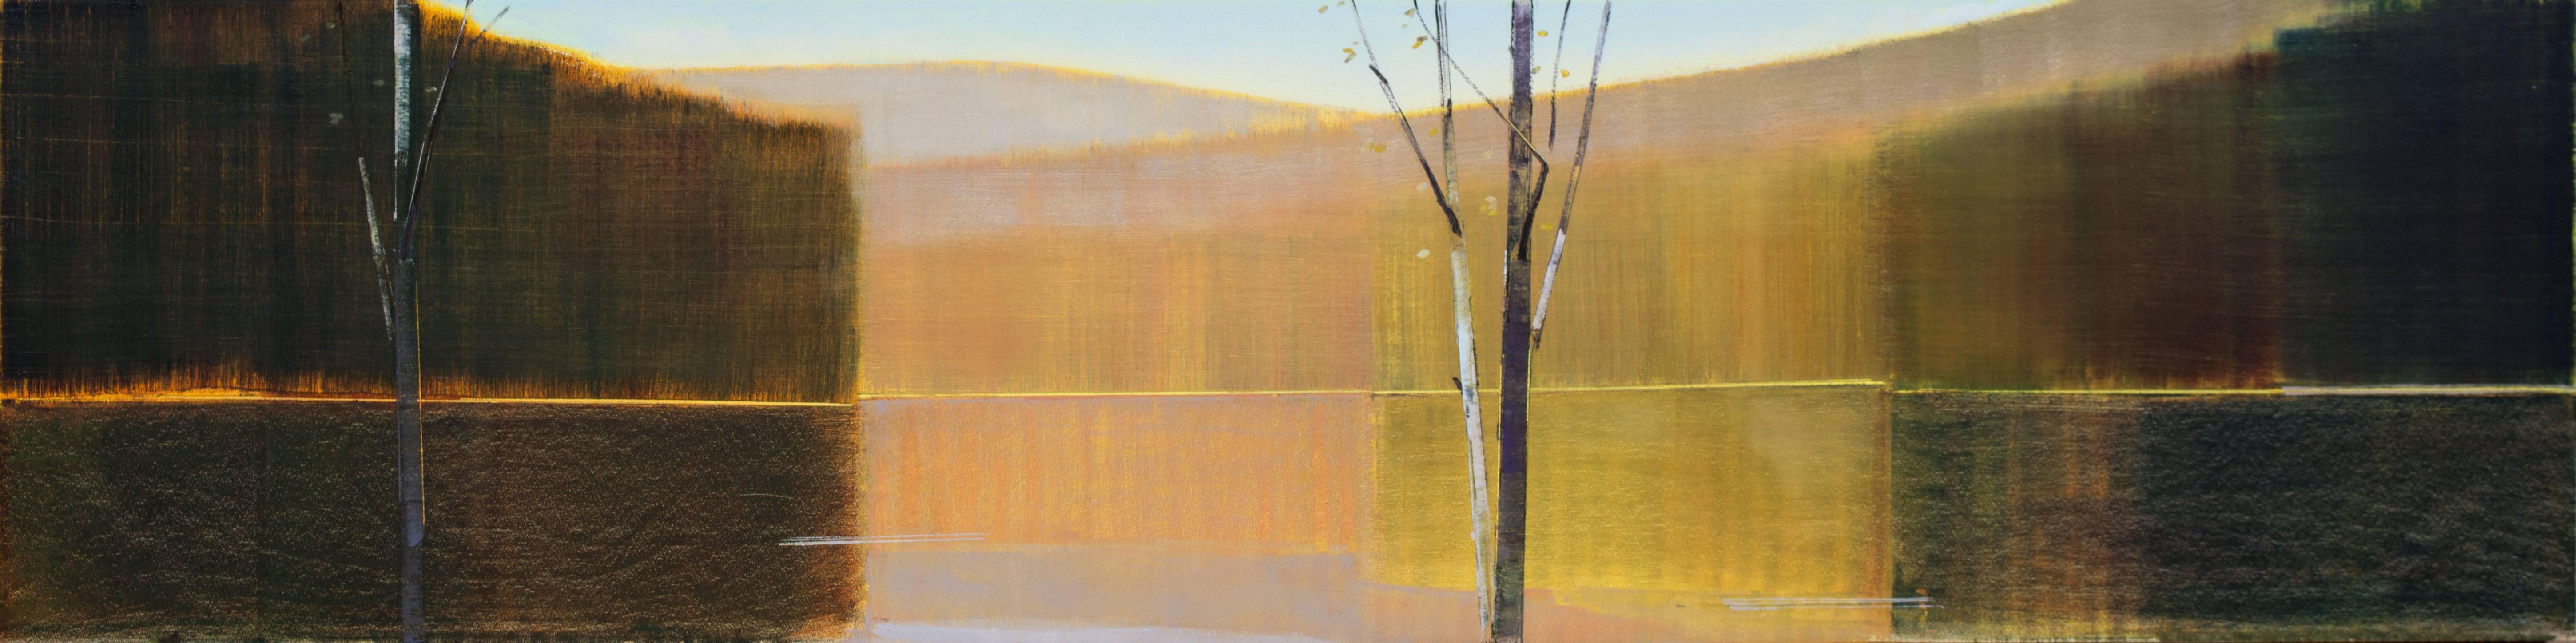 Stephen Pentak Landscape Painting - 2016, IV.V